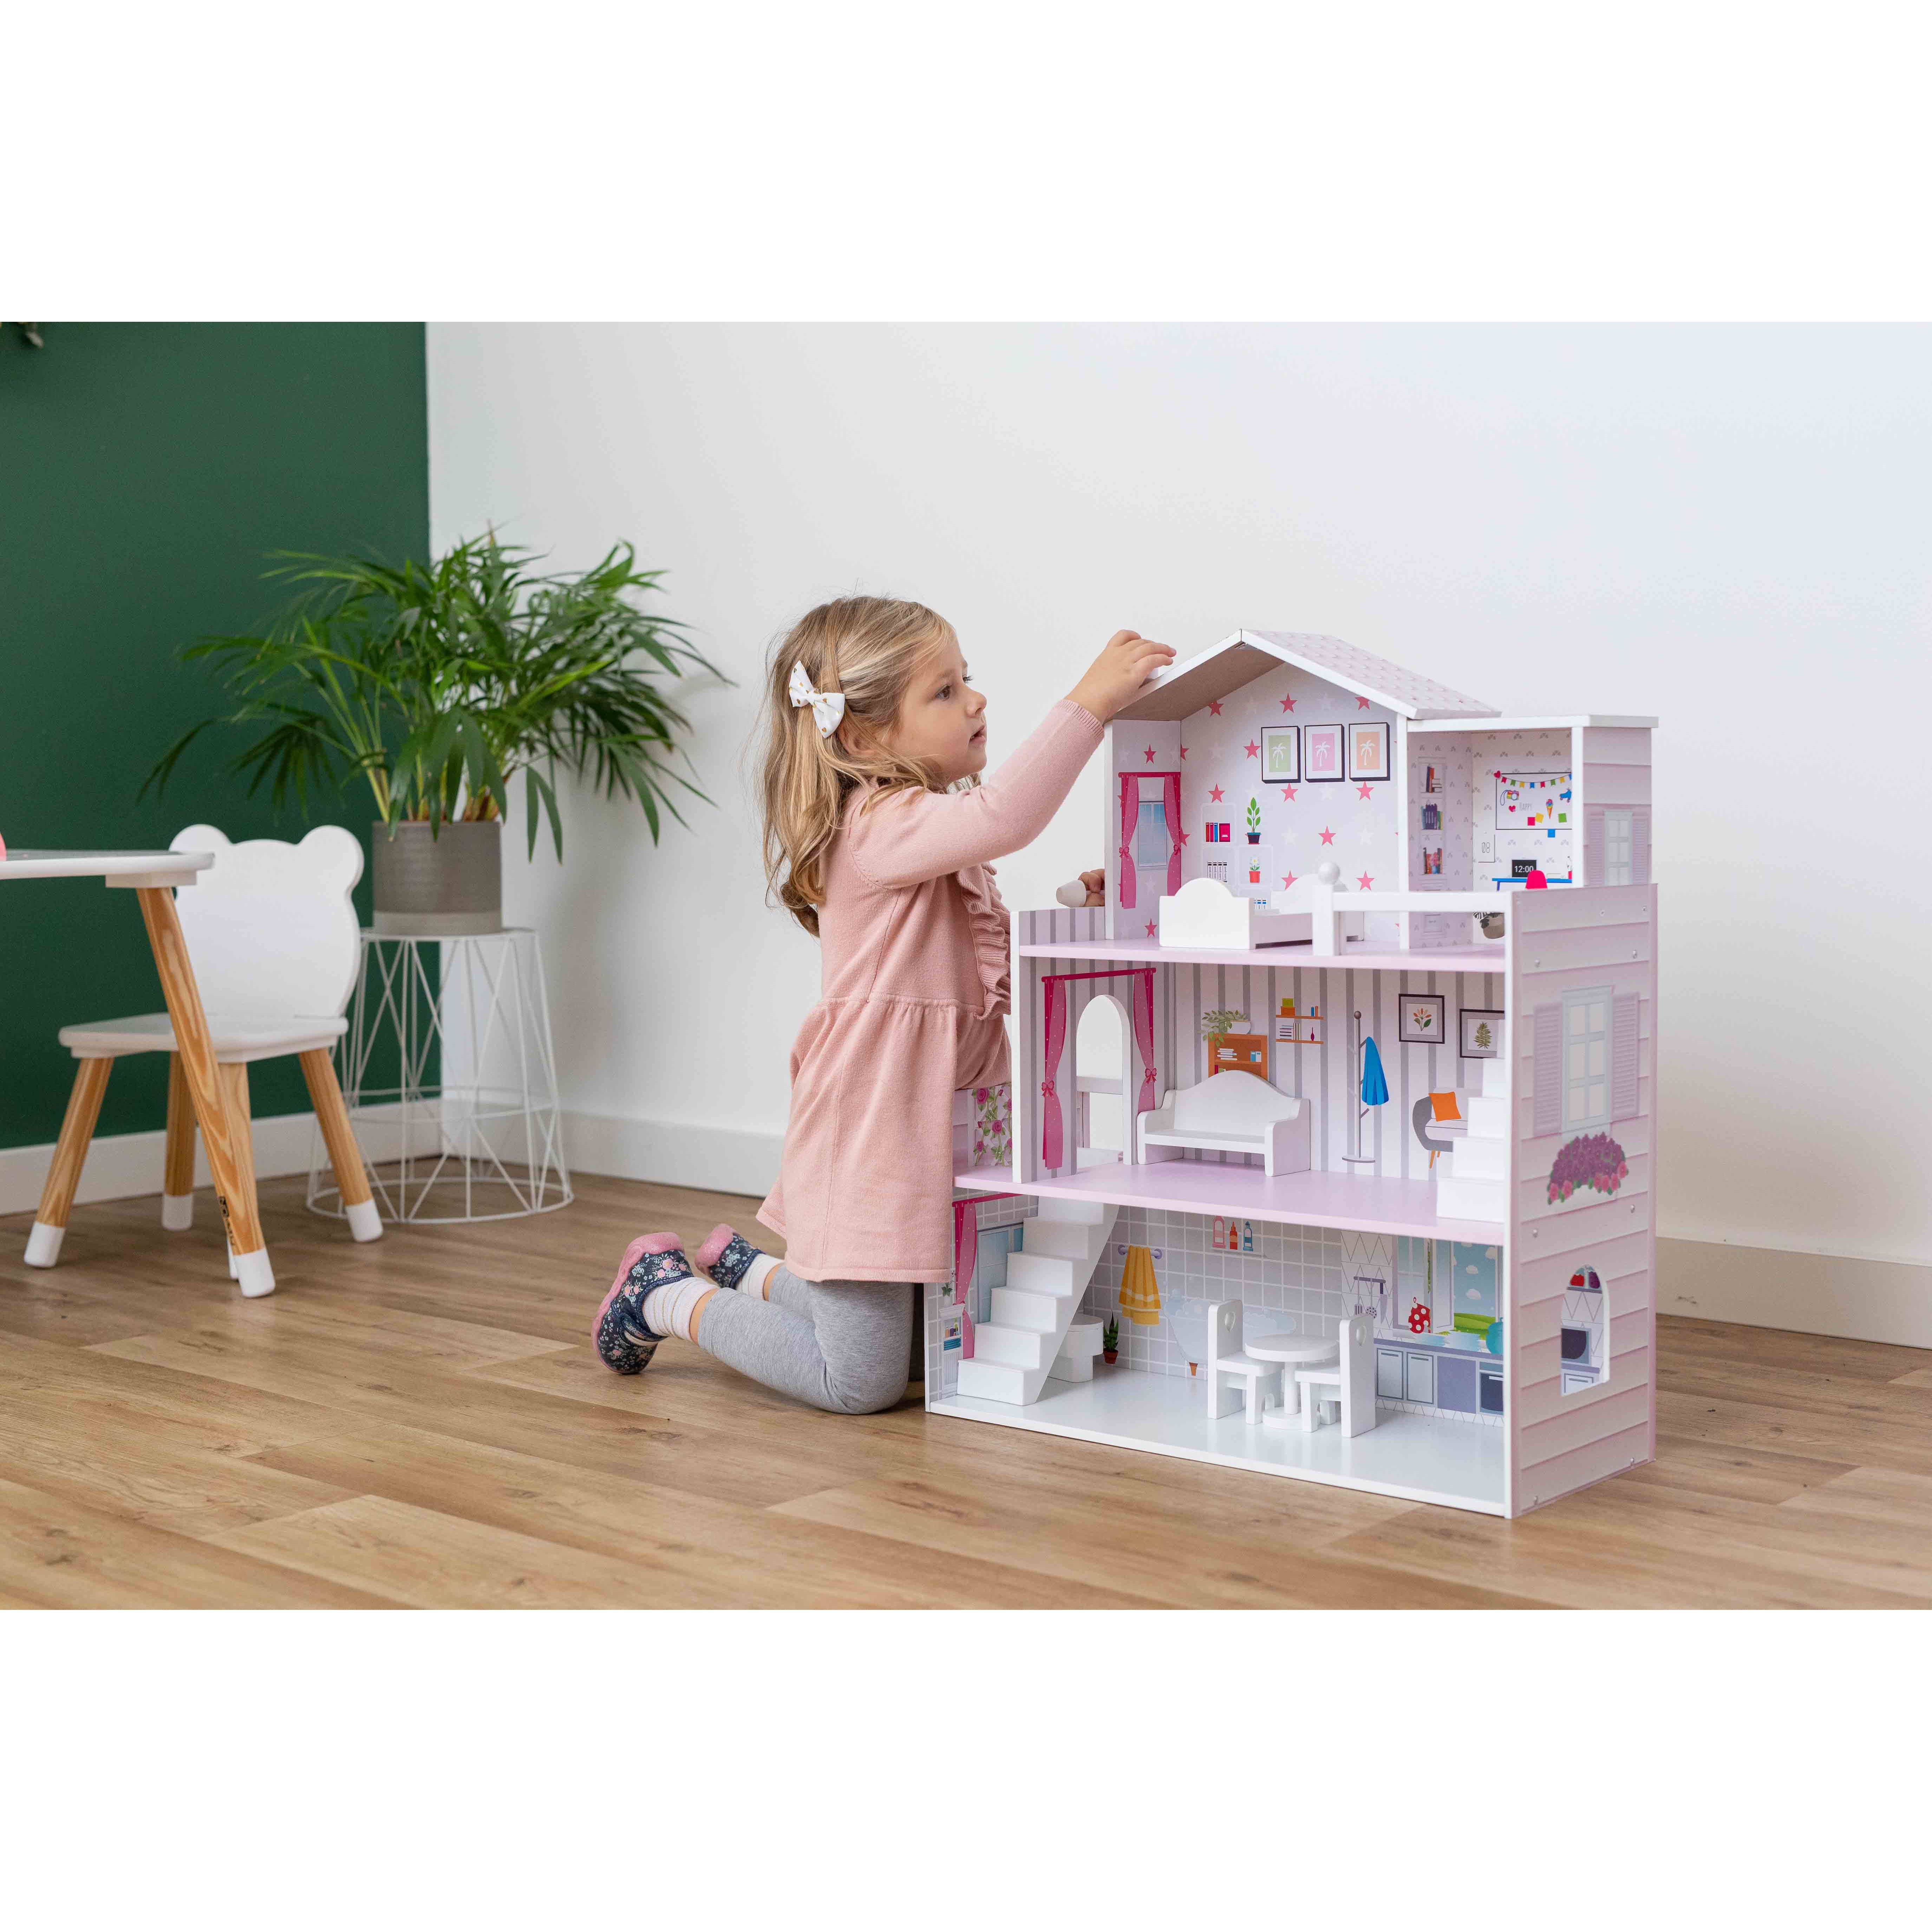 Іграшковий будиночок дерев'яний FreeON рожевий (47290) - фото 16